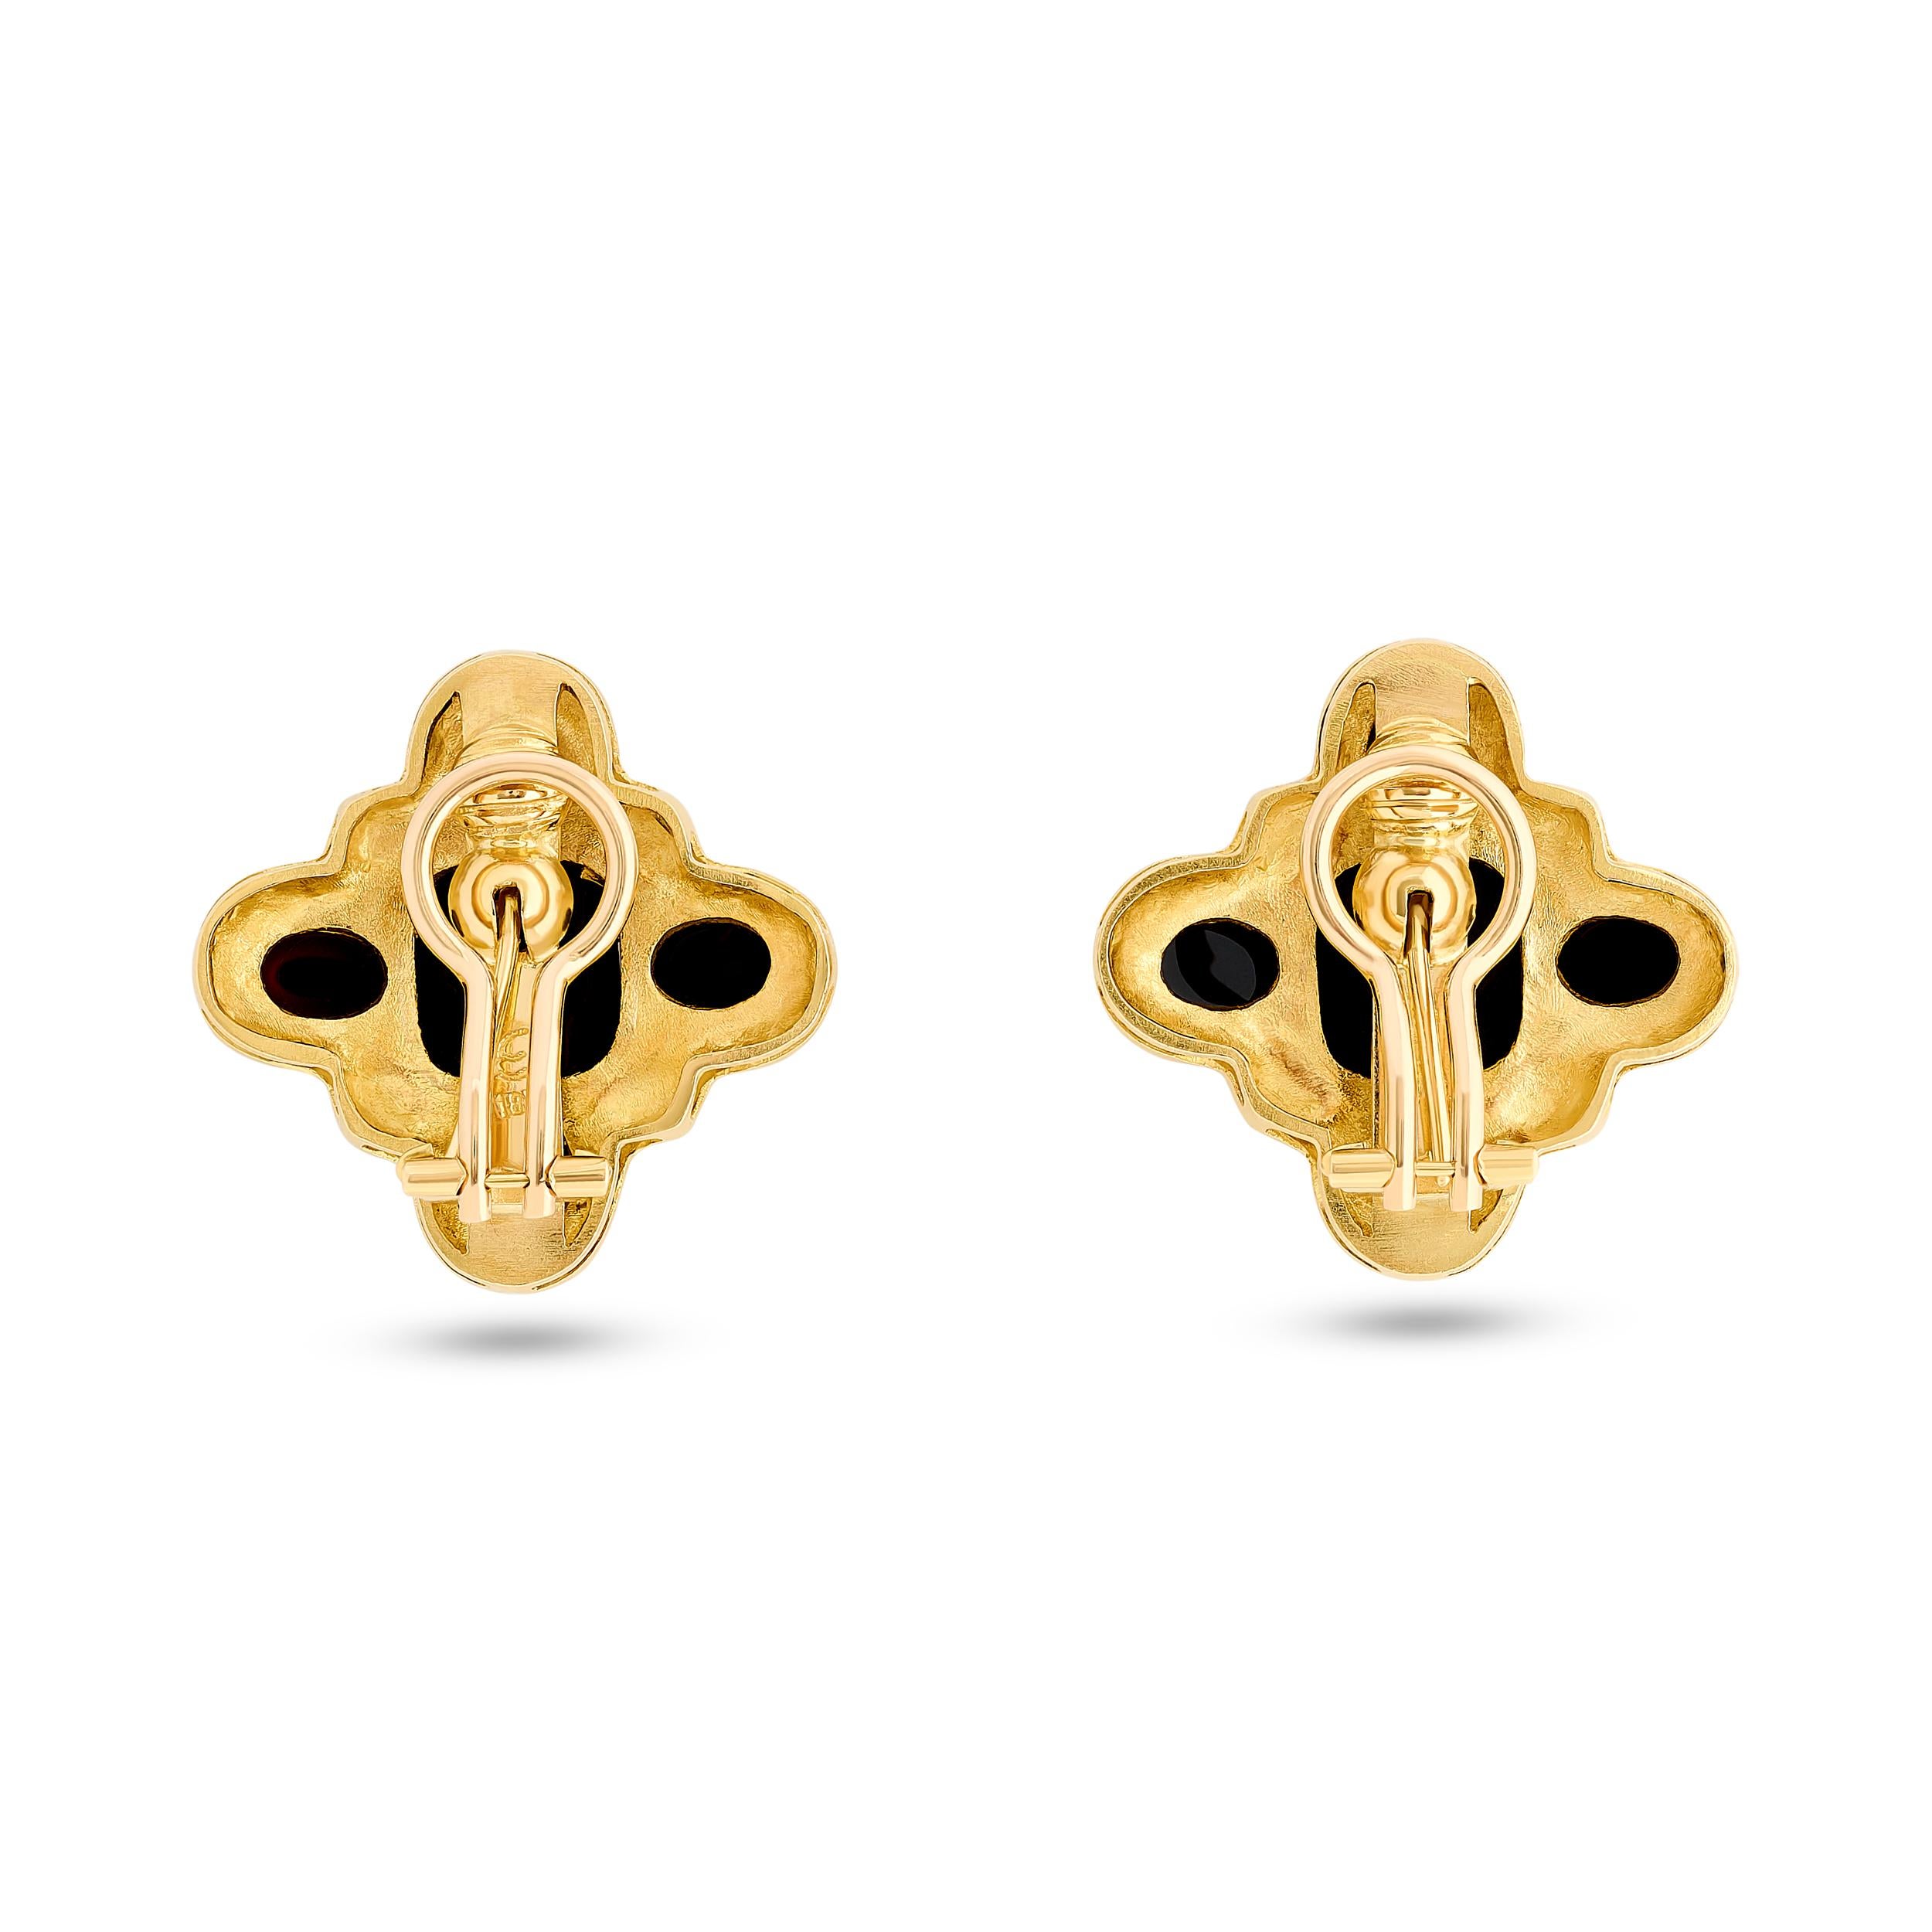 Cabochon Elizabeth Locke 18 Karat Yellow Gold Onyx Earrings For Sale